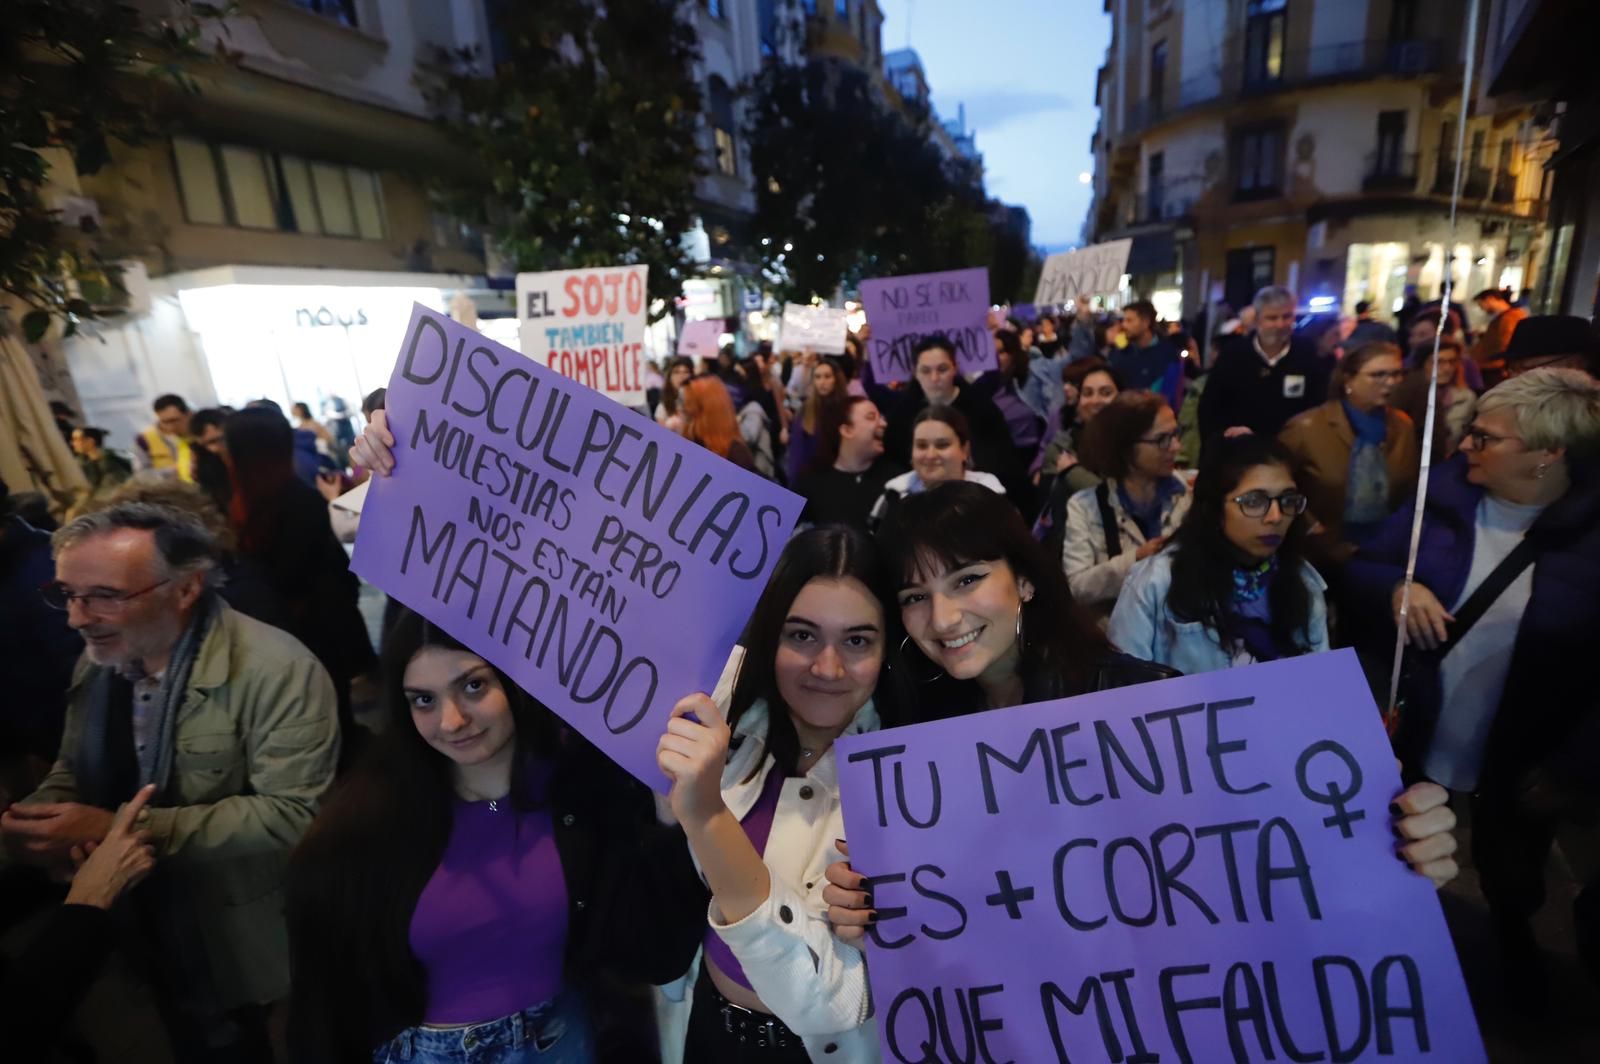 La manifestación del 8M recorre las calles de Córdoba